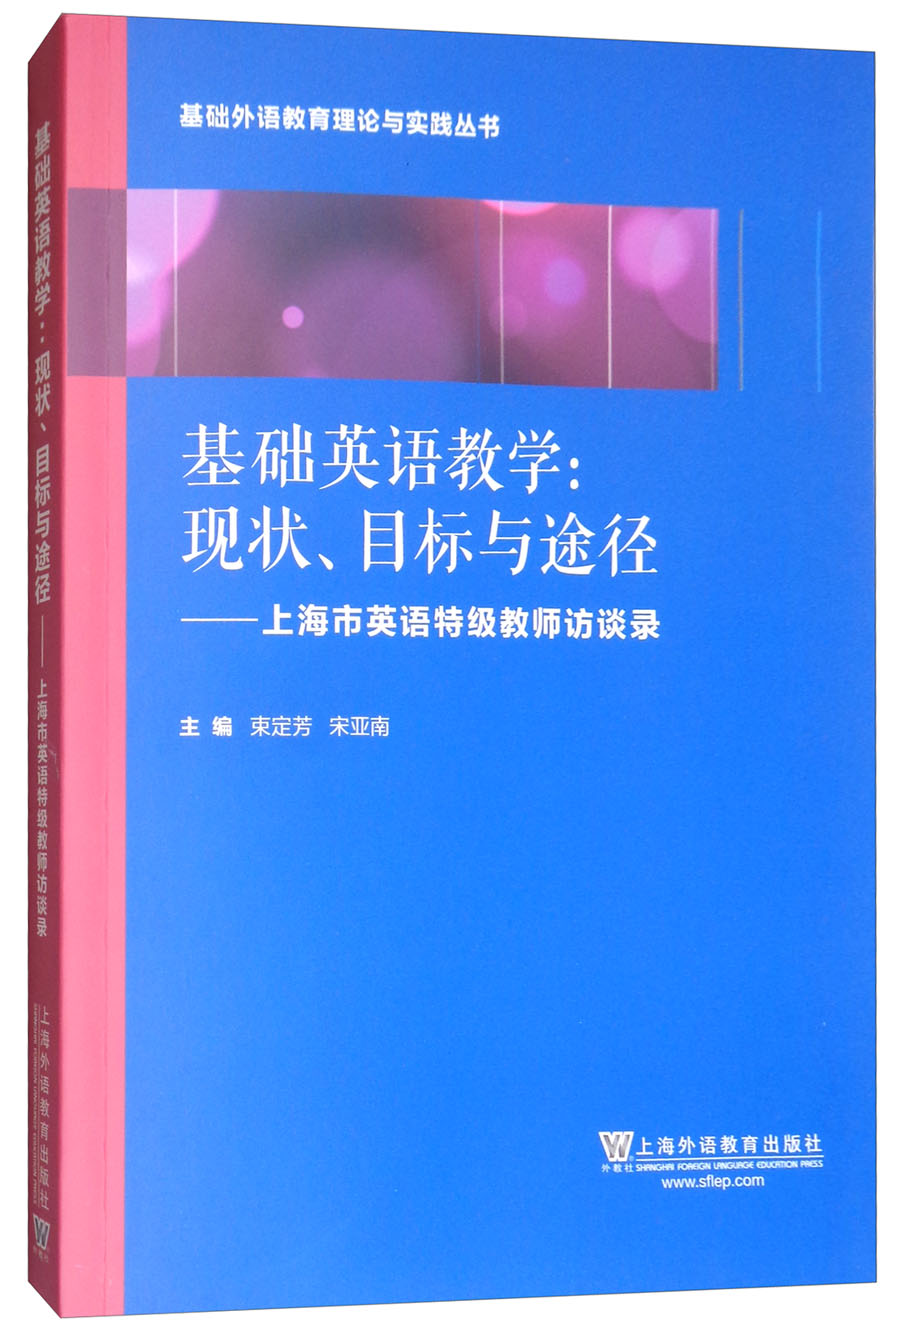 基础外语教育理论与实践丛书·基础英语教学·现状、目标与途径：上海英语特级教师访谈录 kindle格式下载